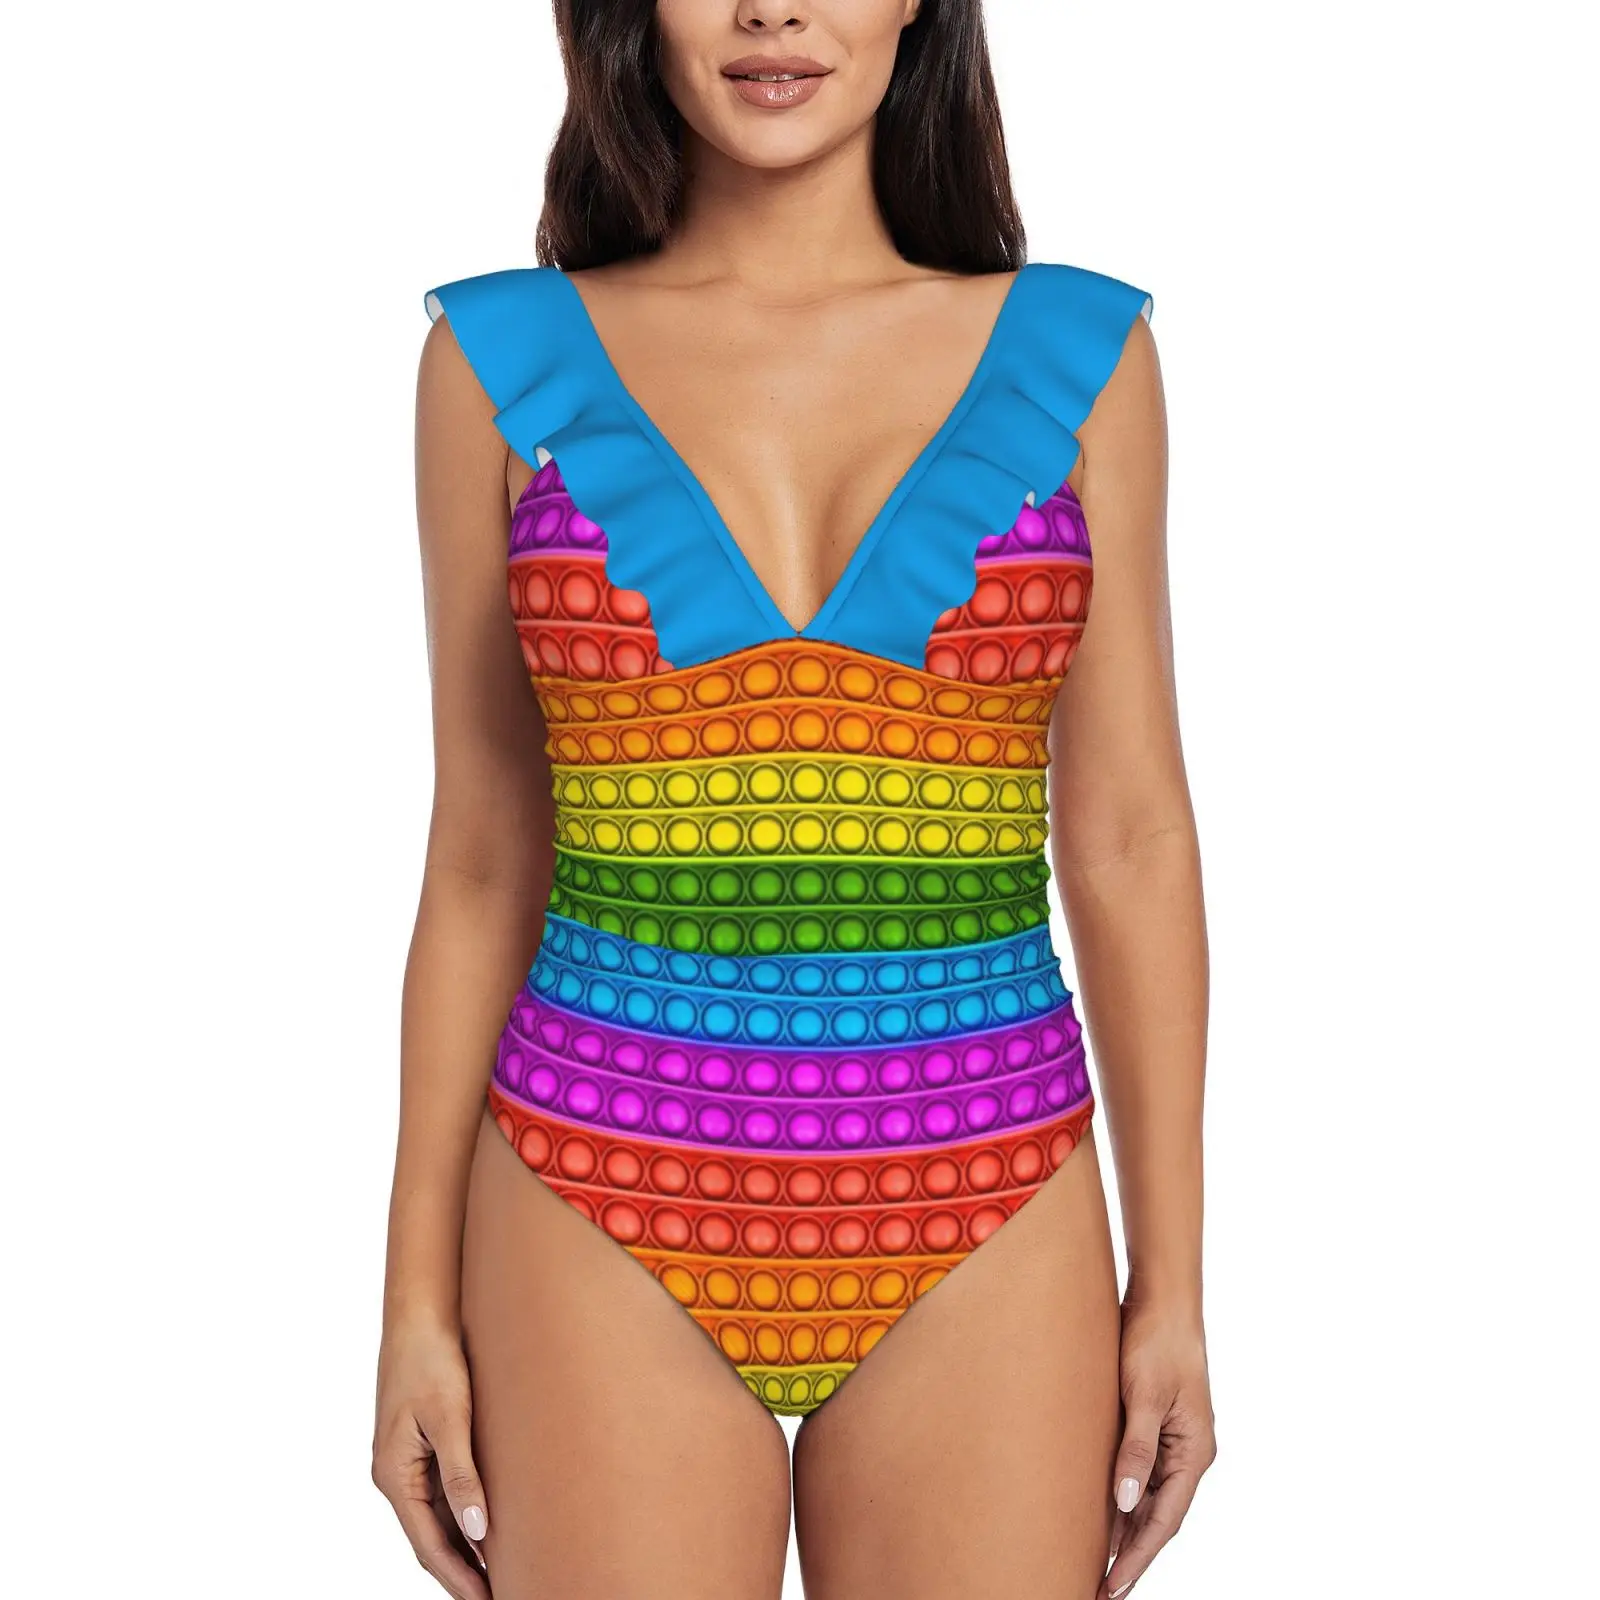 

Женский слитный купальник с оборками Pop It-разноцветный купальник, монокини, пляжная одежда Pop It Popit Fidget